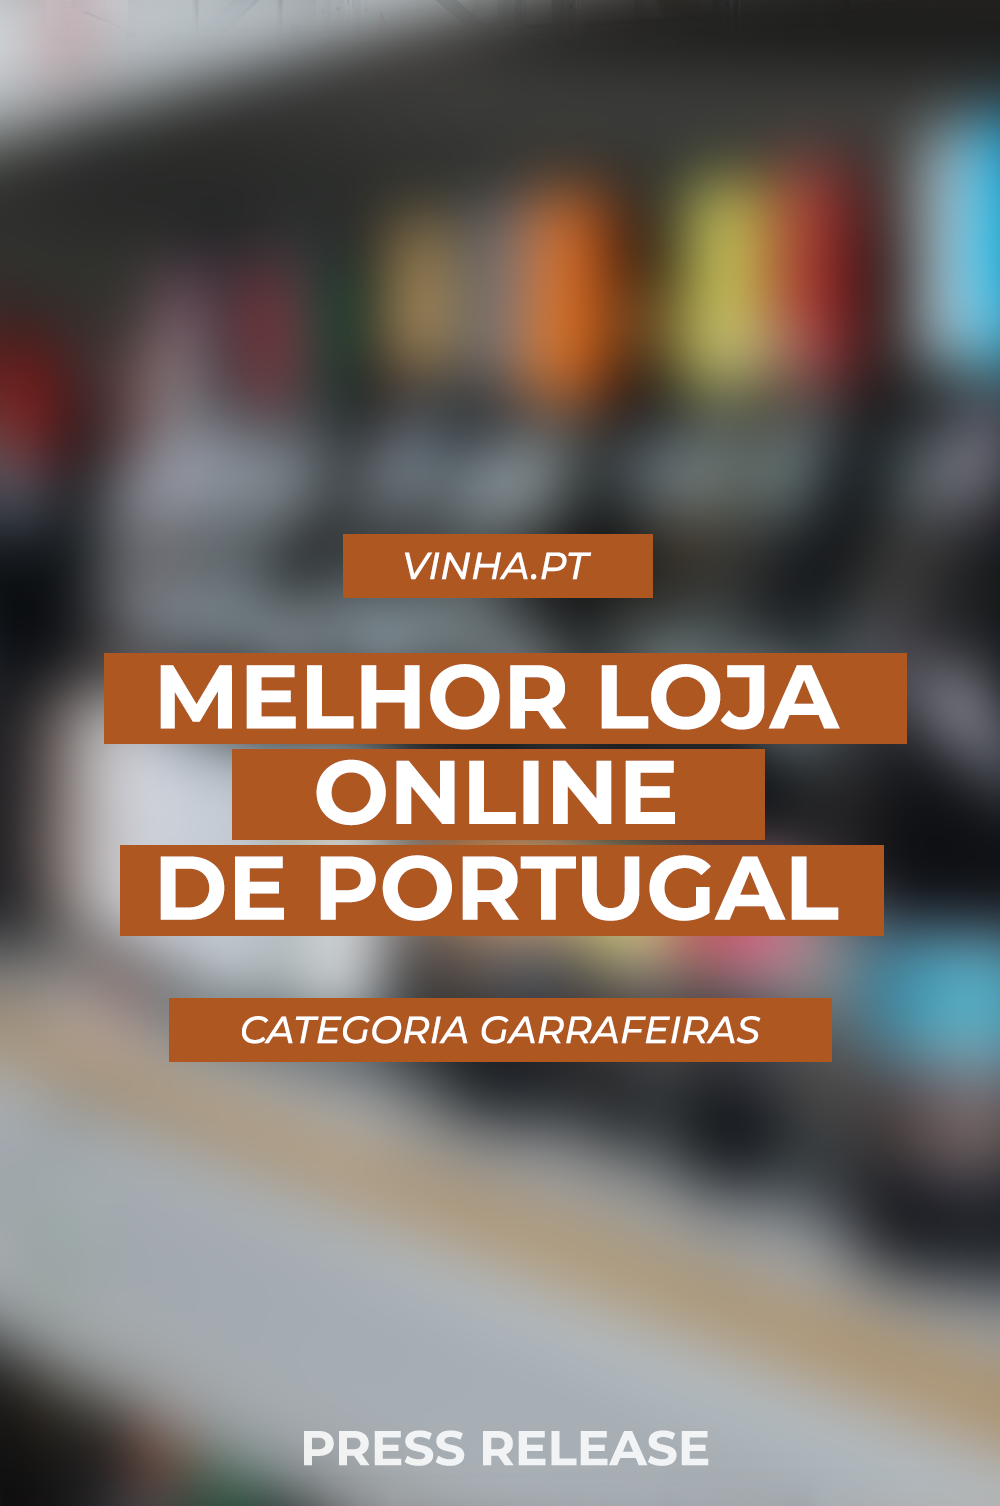 Vinha.pt vence o prémio da Melhor Loja Online de Portugal, na categoria “garrafeiras”